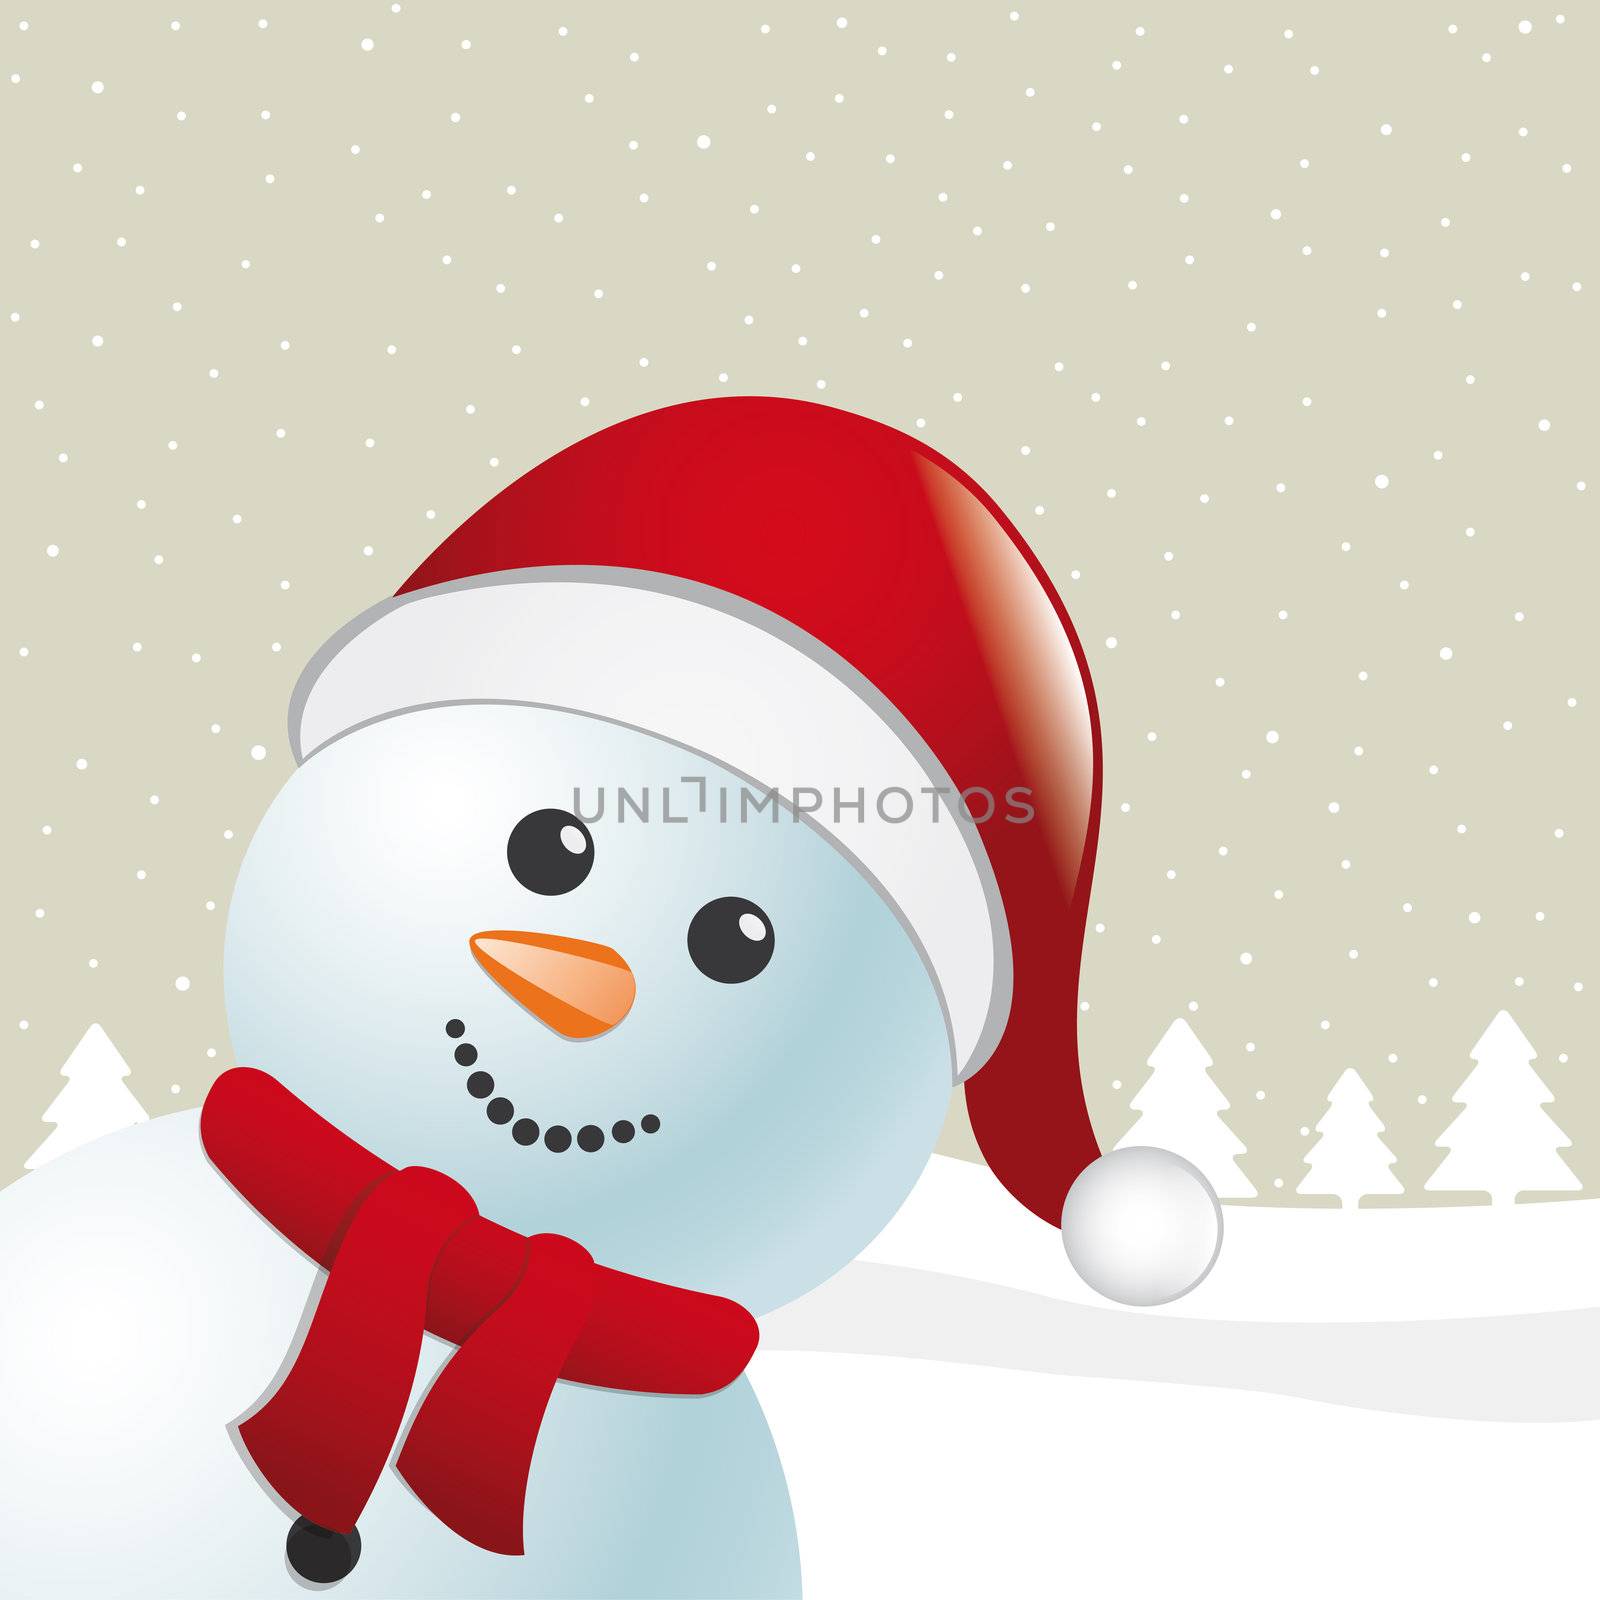 snowman scarf and santa claus hat by dariusL